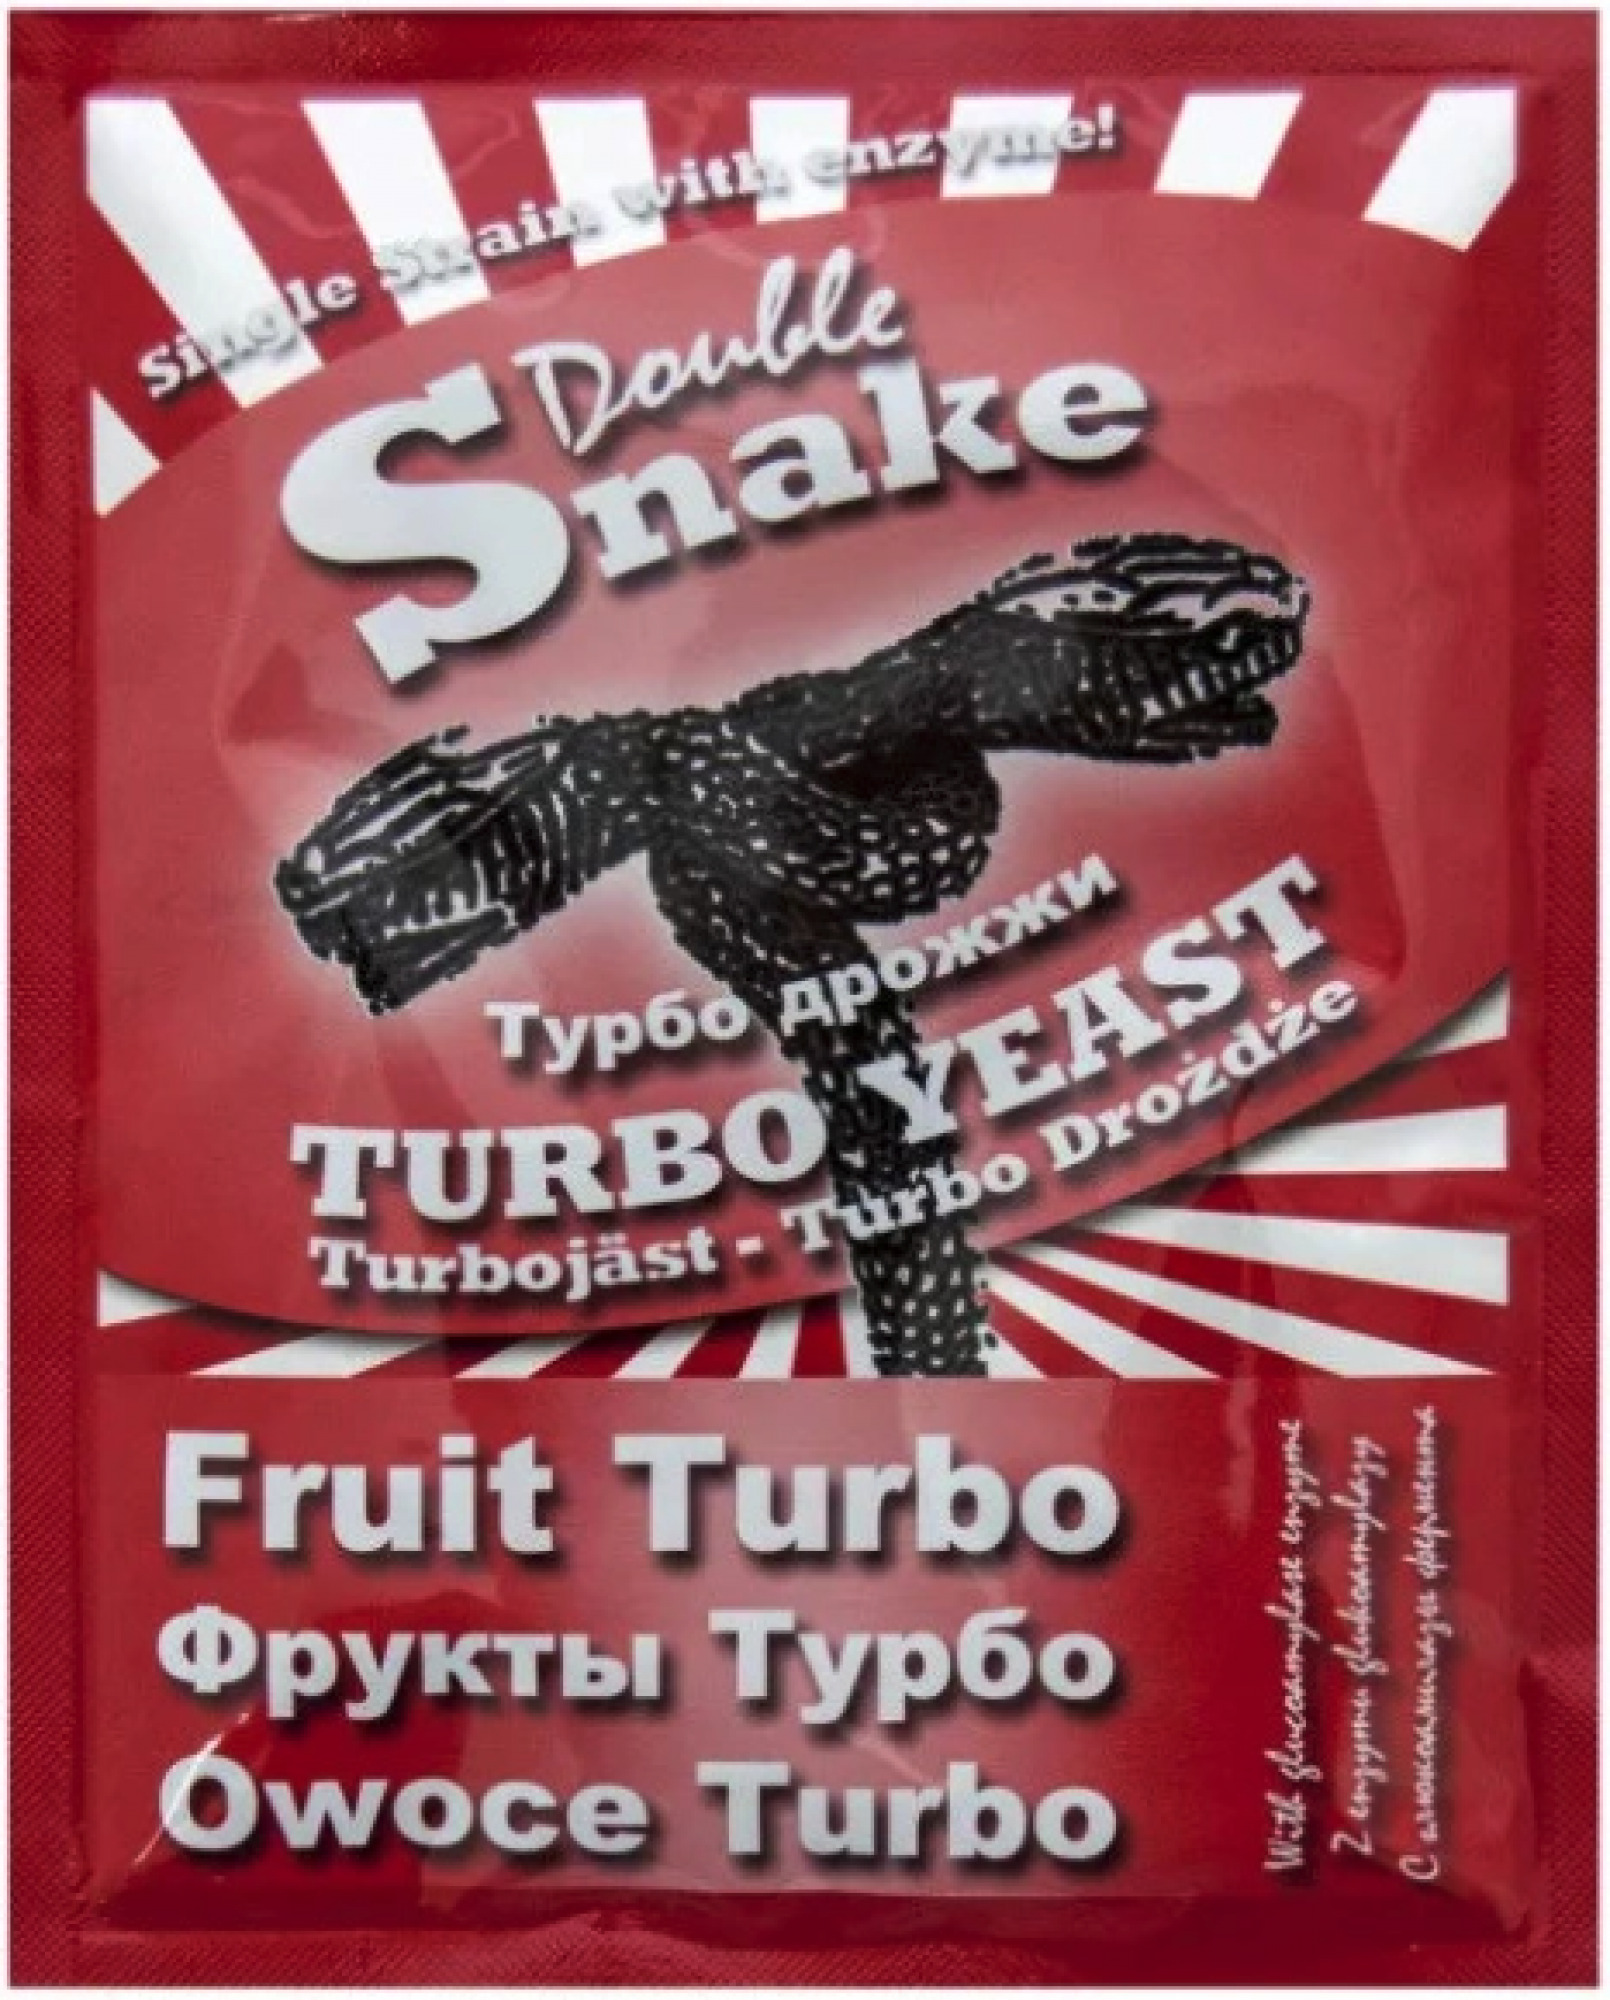 Дрожжи дабл снейк. Турбо дрожжи Puriferm Fruit. Дрожжи Double Snake Fruit Turbo. Турбо дрожжи DOUBLESNAKE Fruit Turbo (49г). Турбо дрожжи "Leyka Fruit" 68гр.